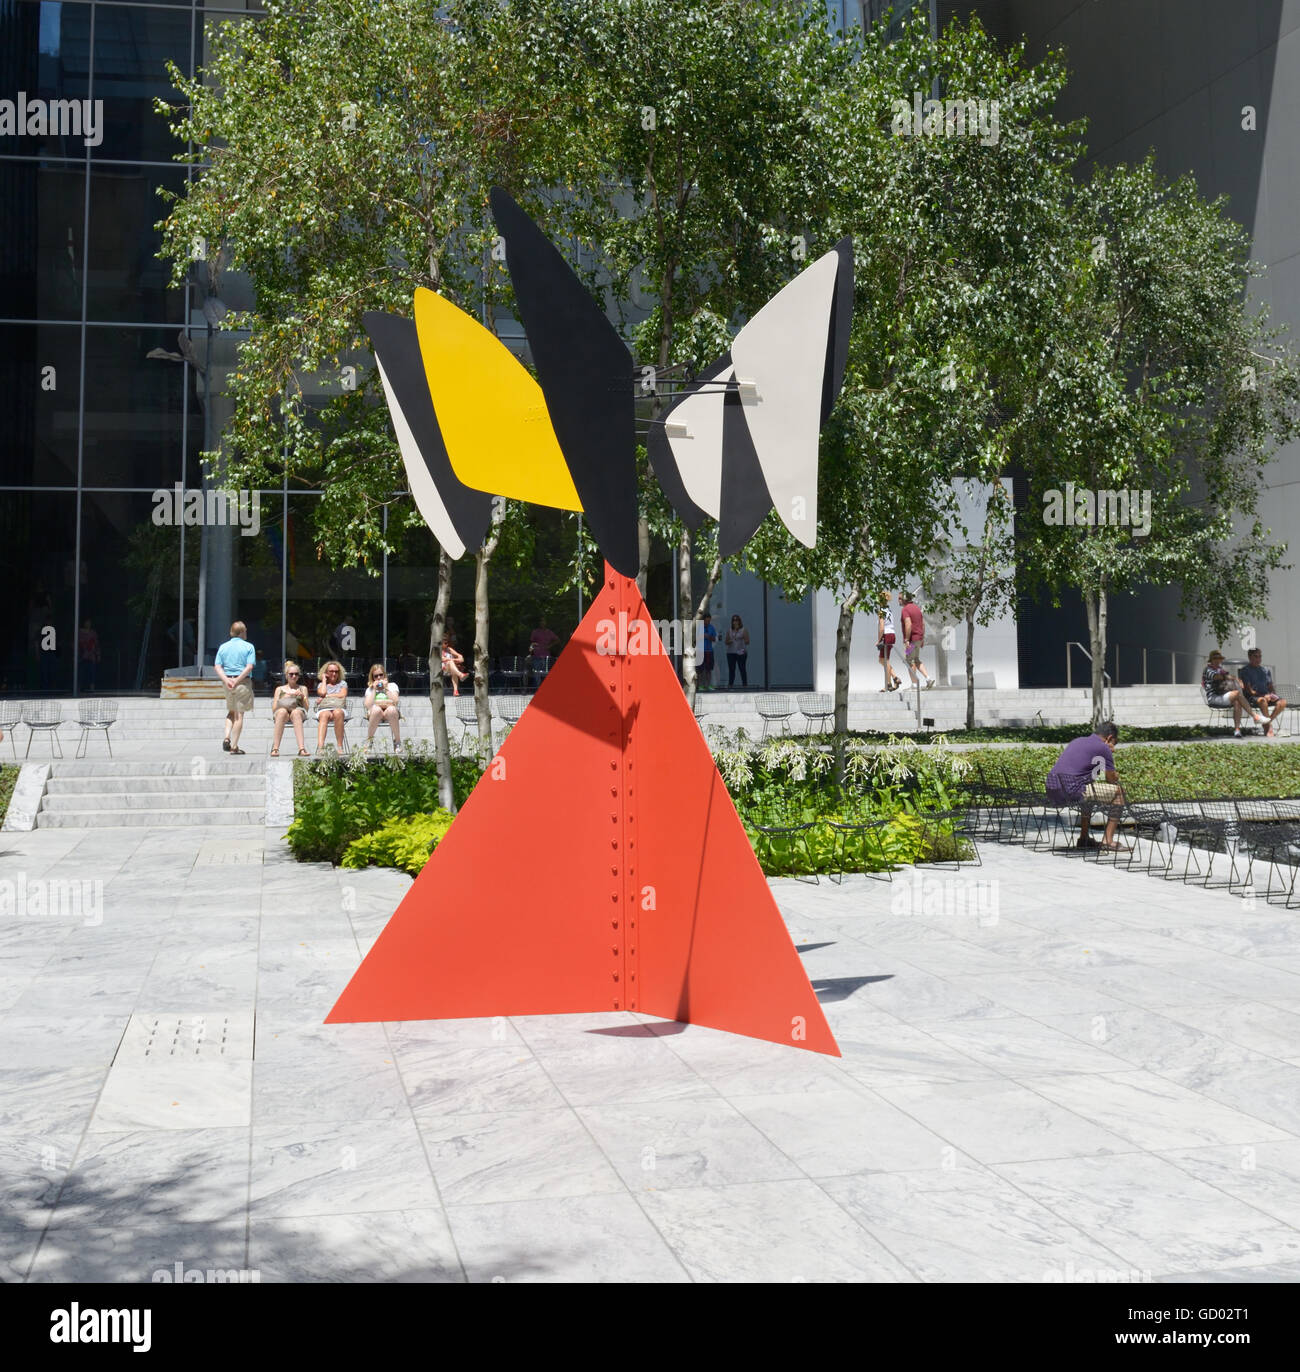 Sandy's Butterfly, 1964, par Alexander Calder, jardin de sculptures au MOMA, NYC Banque D'Images